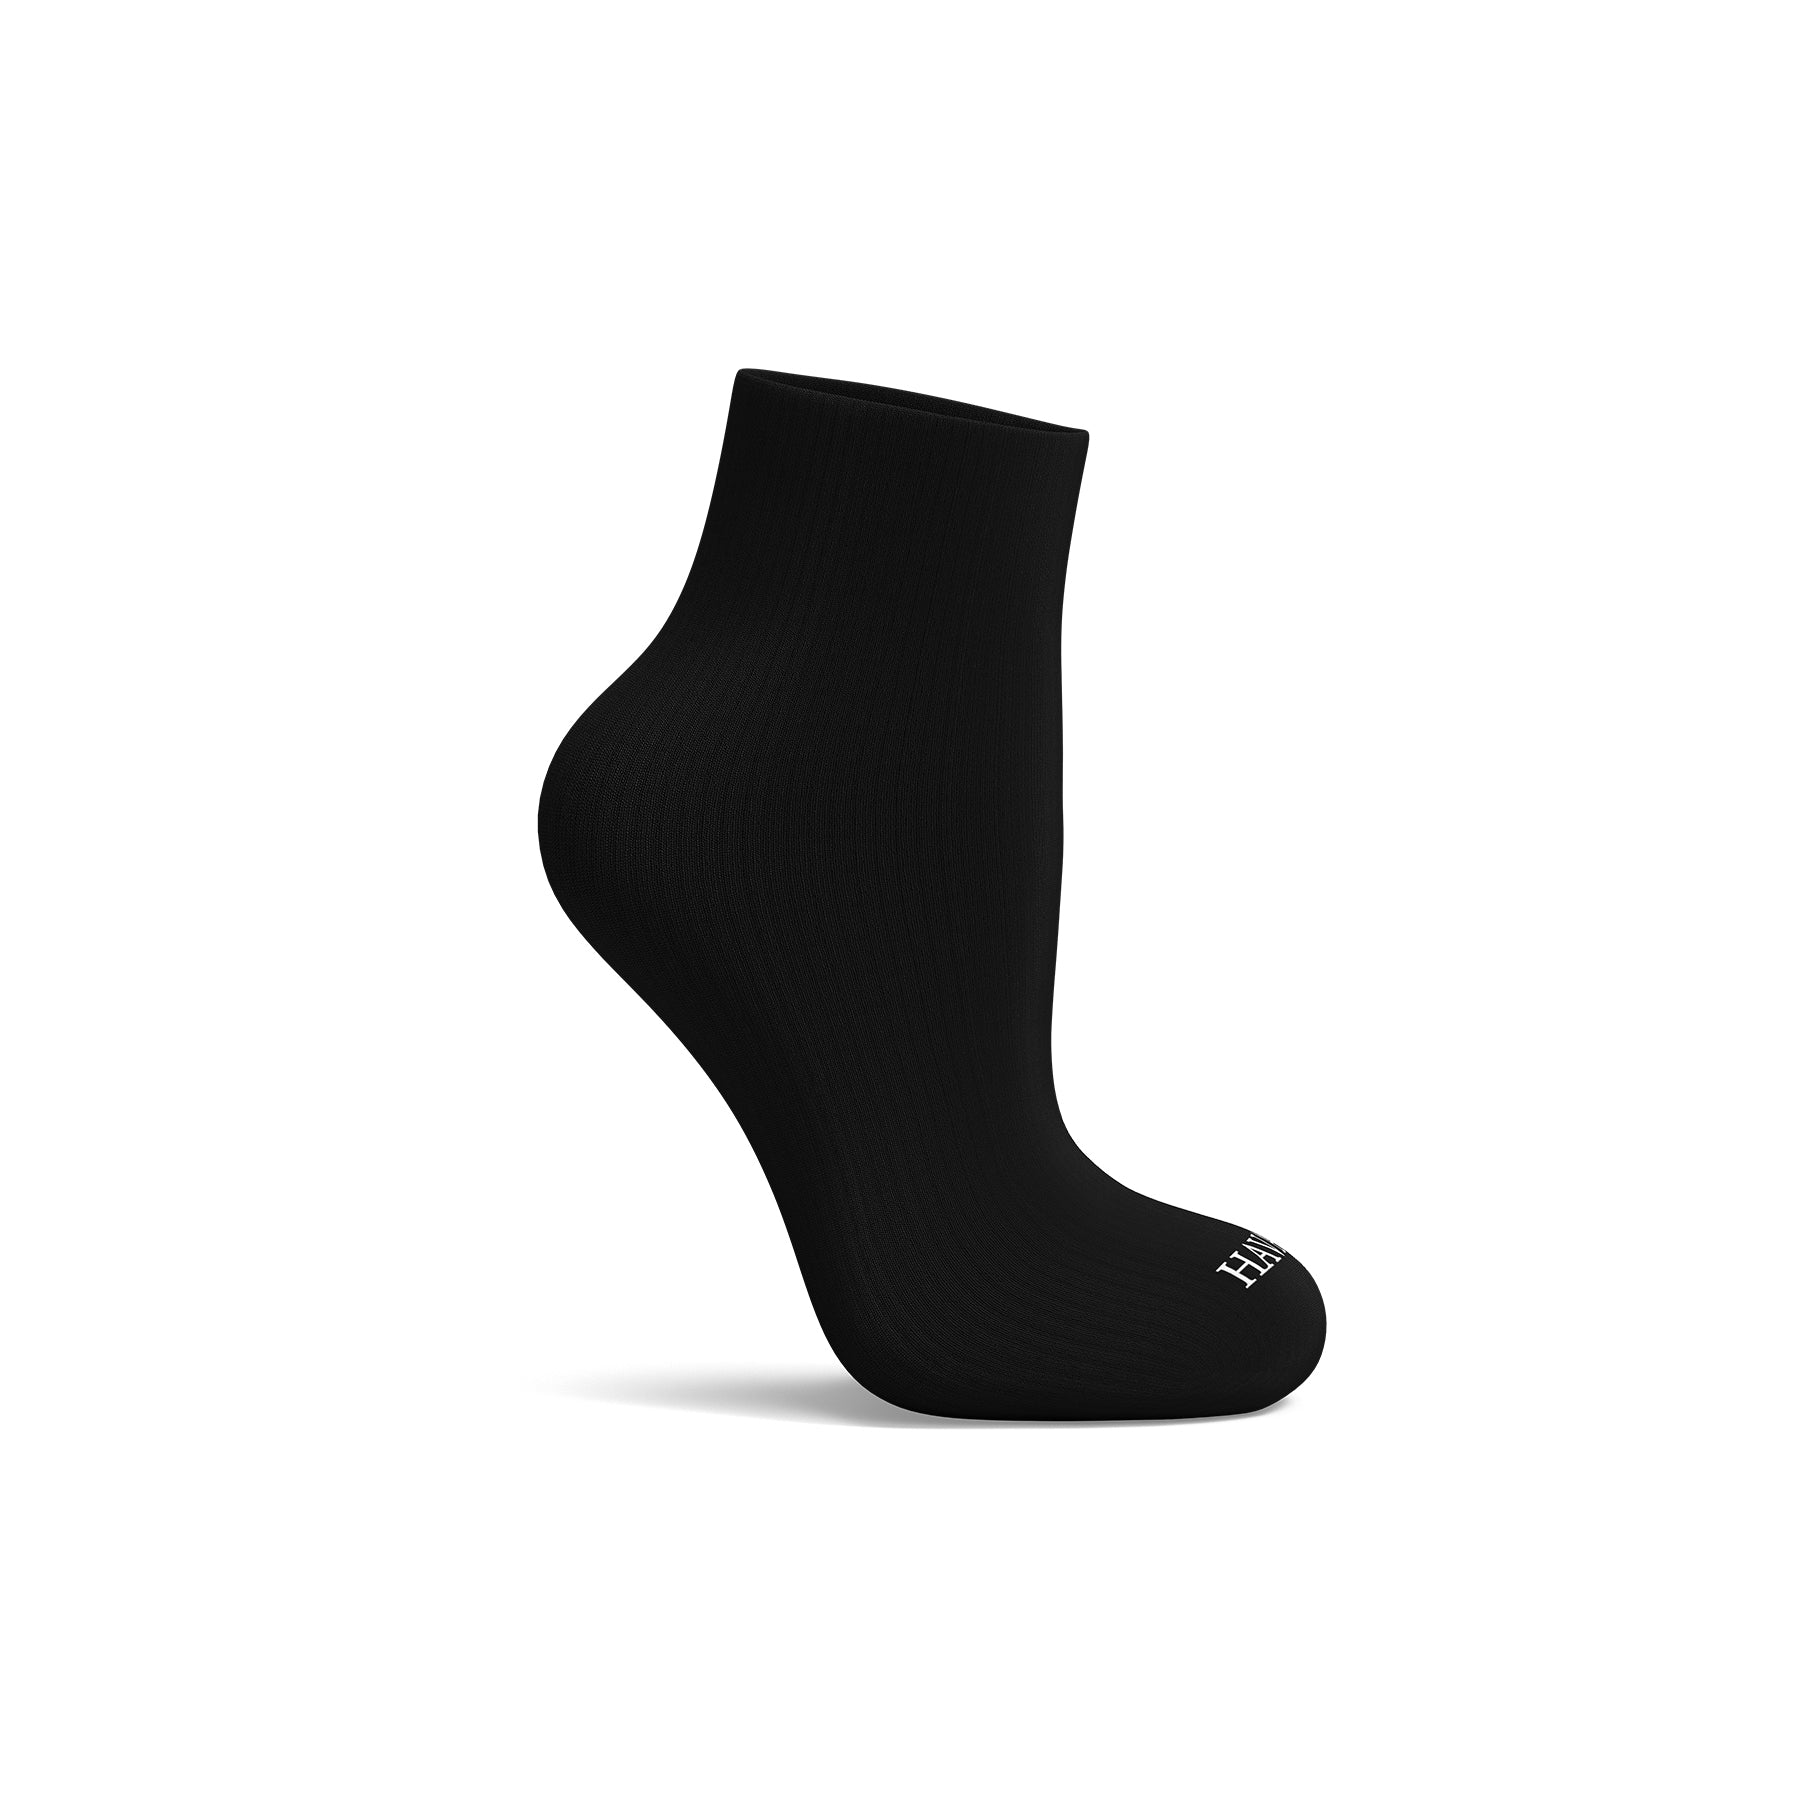 Plain Black Half socks